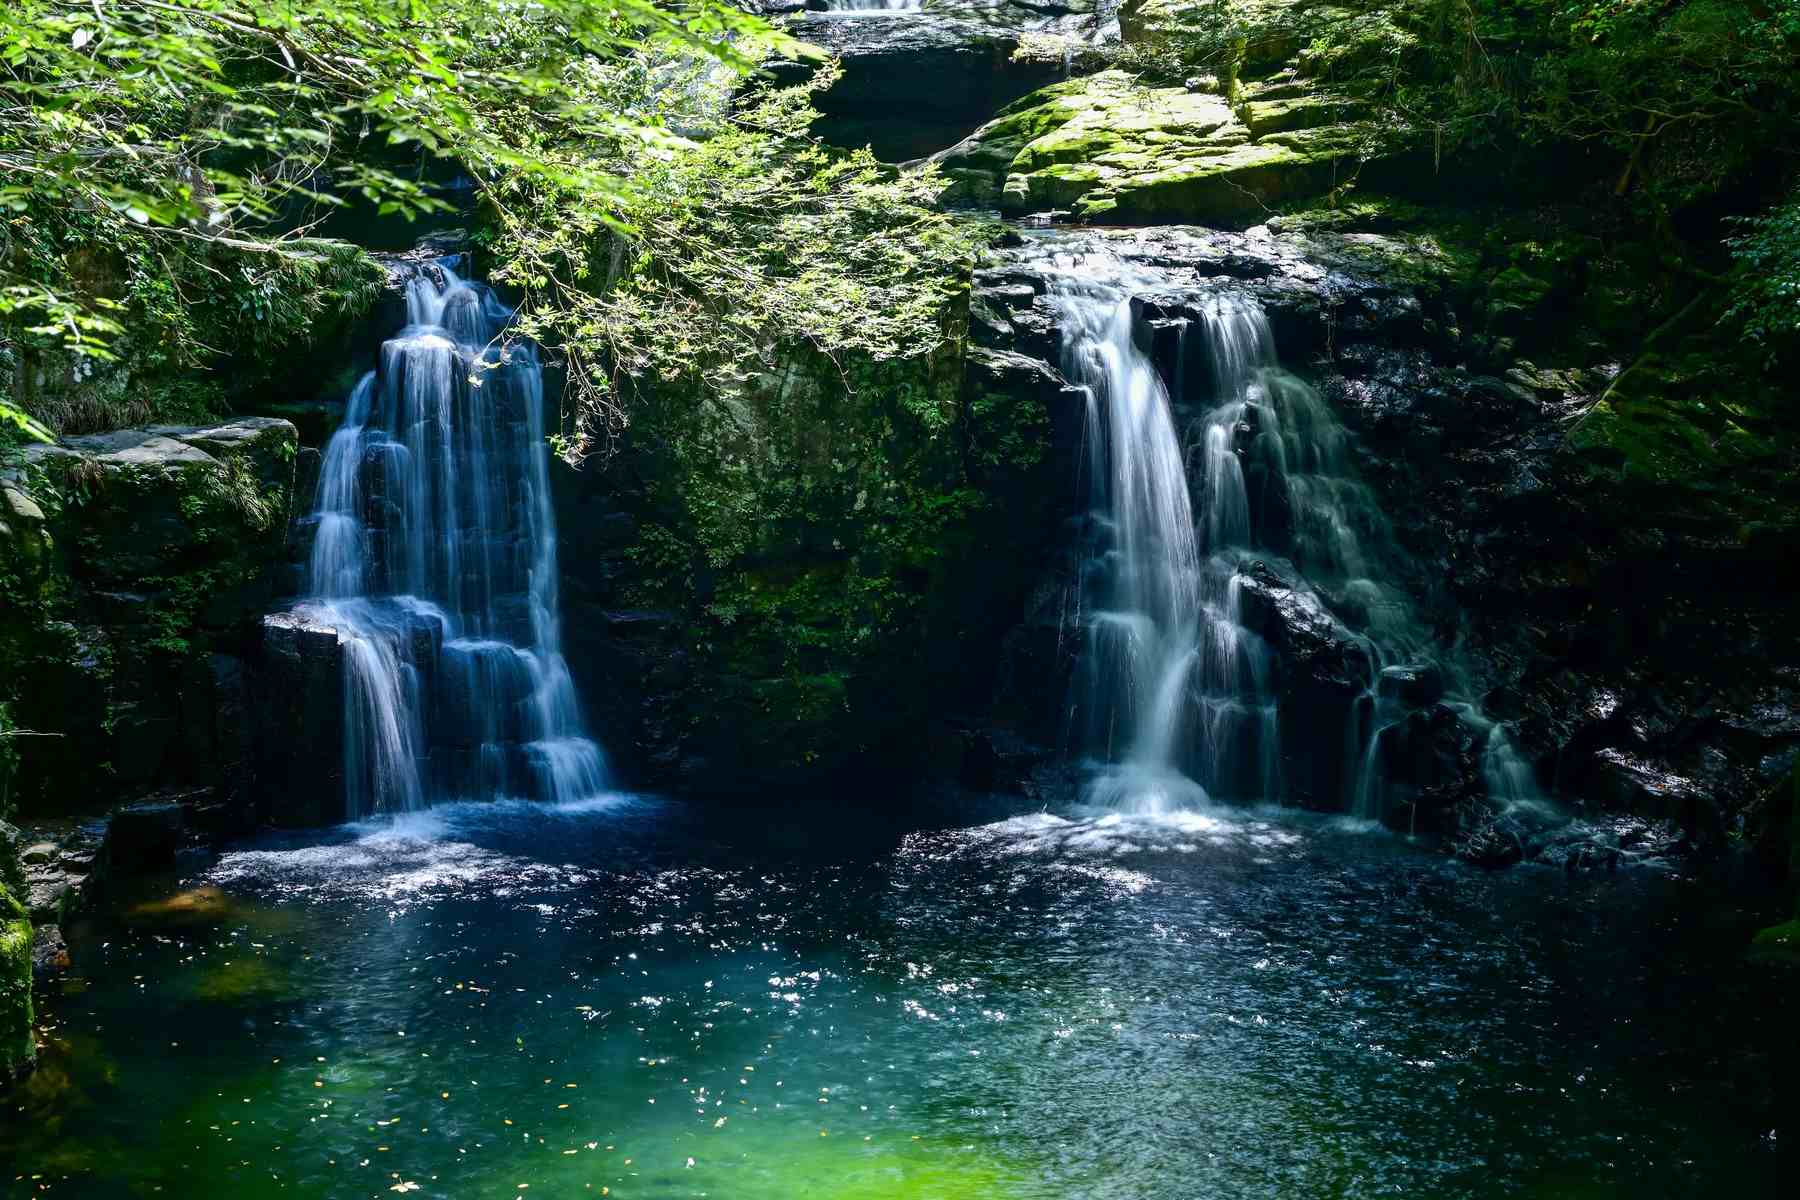 Akame Waterfalls